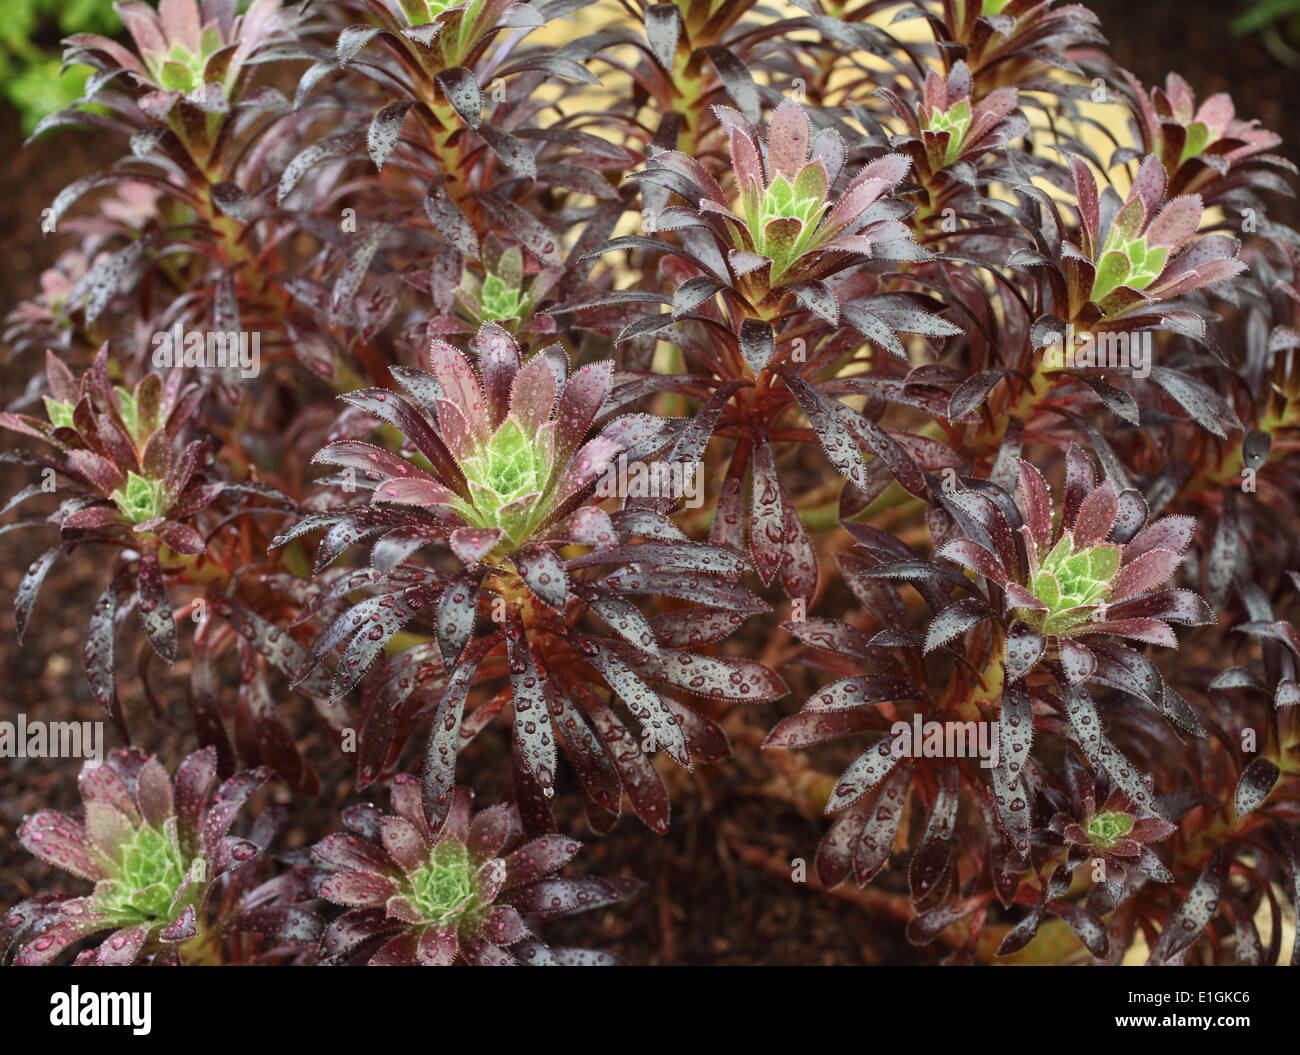 Aeonium 'Logan Rock' close up of plant Stock Photo